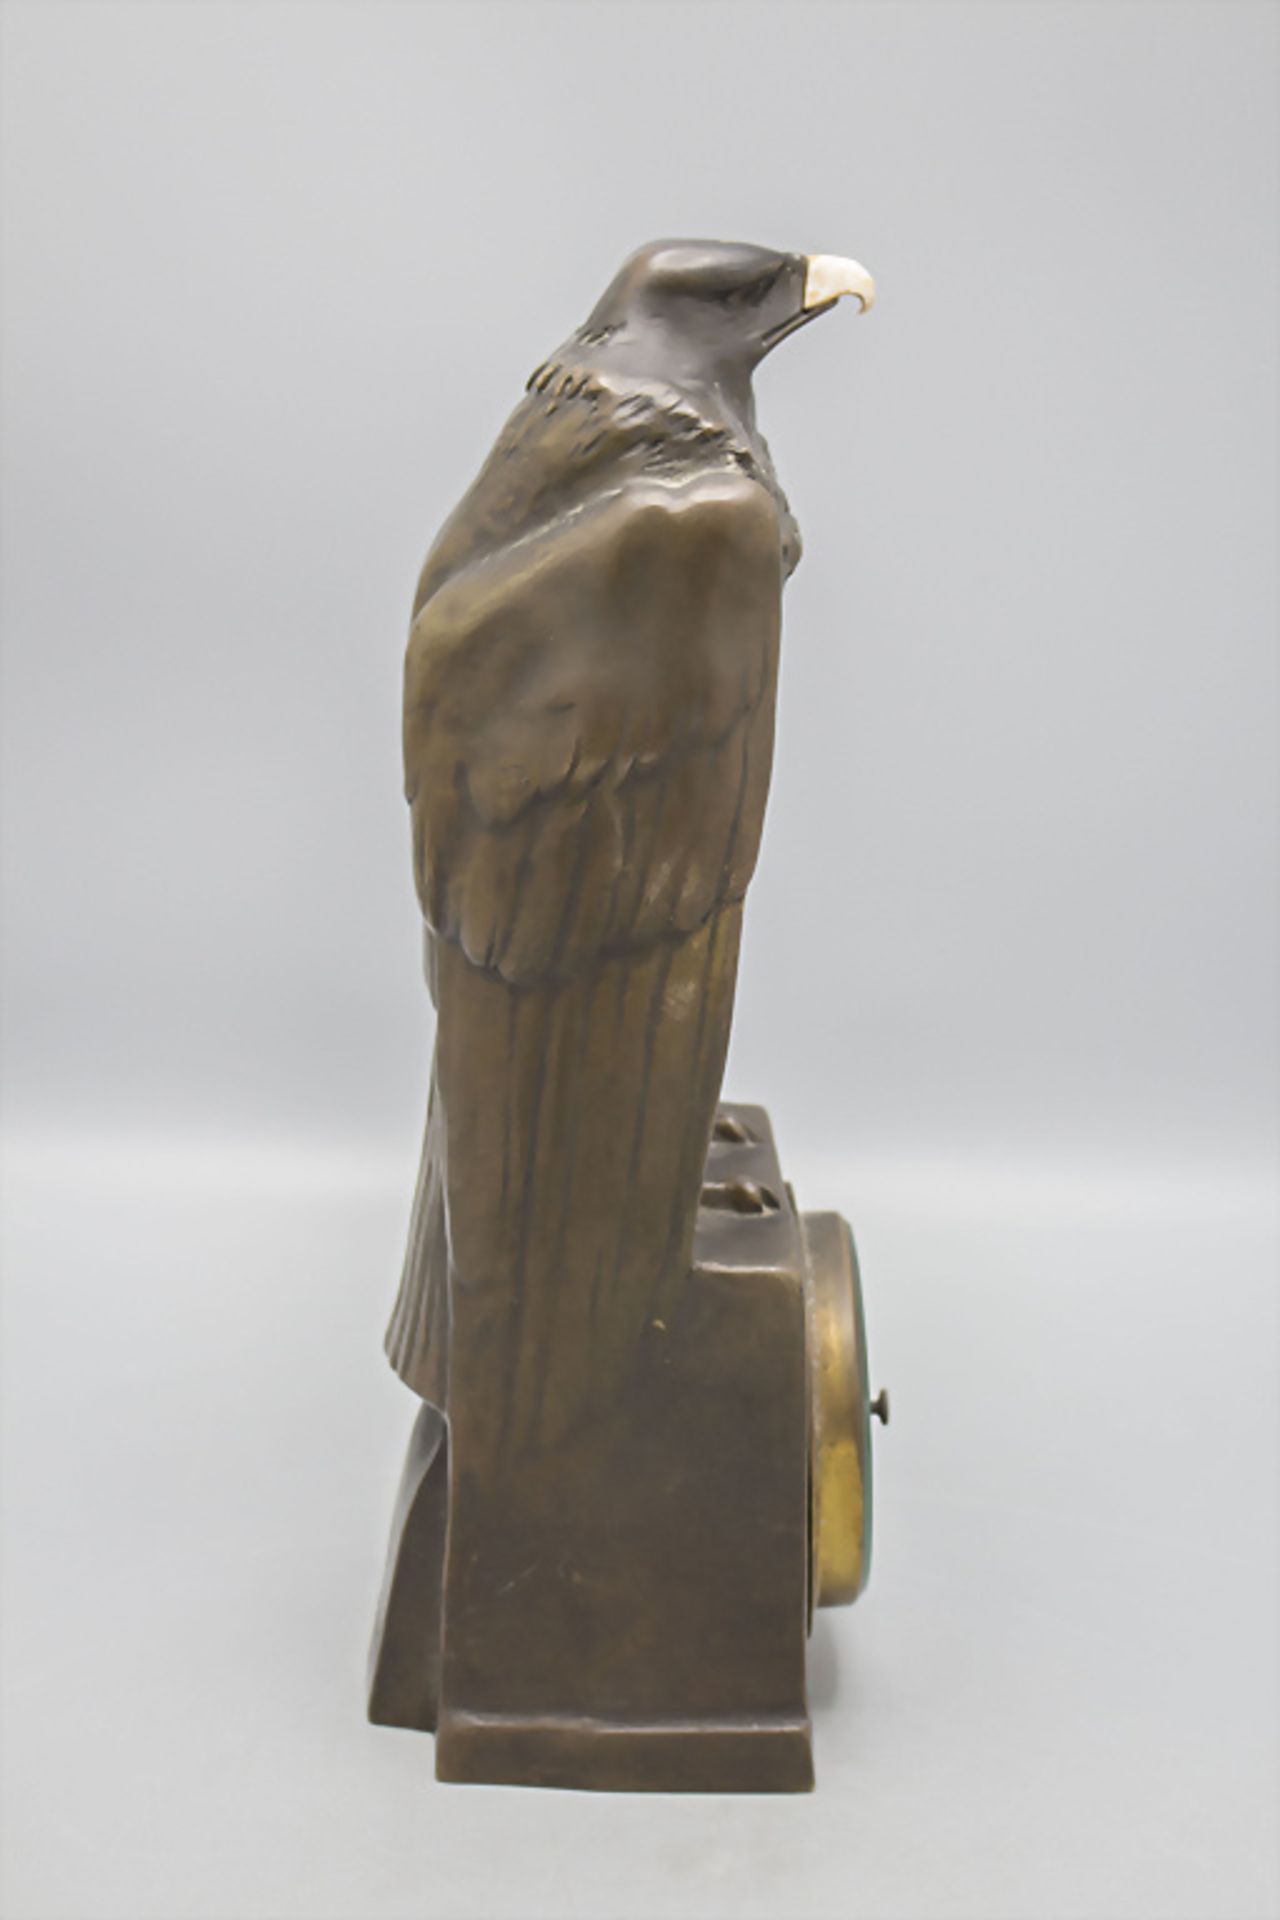 Jugendstil Bronze 'Adler mit Barometer' / An Art Nouveau bronze barometer with an eagle, Anton ... - Image 5 of 8